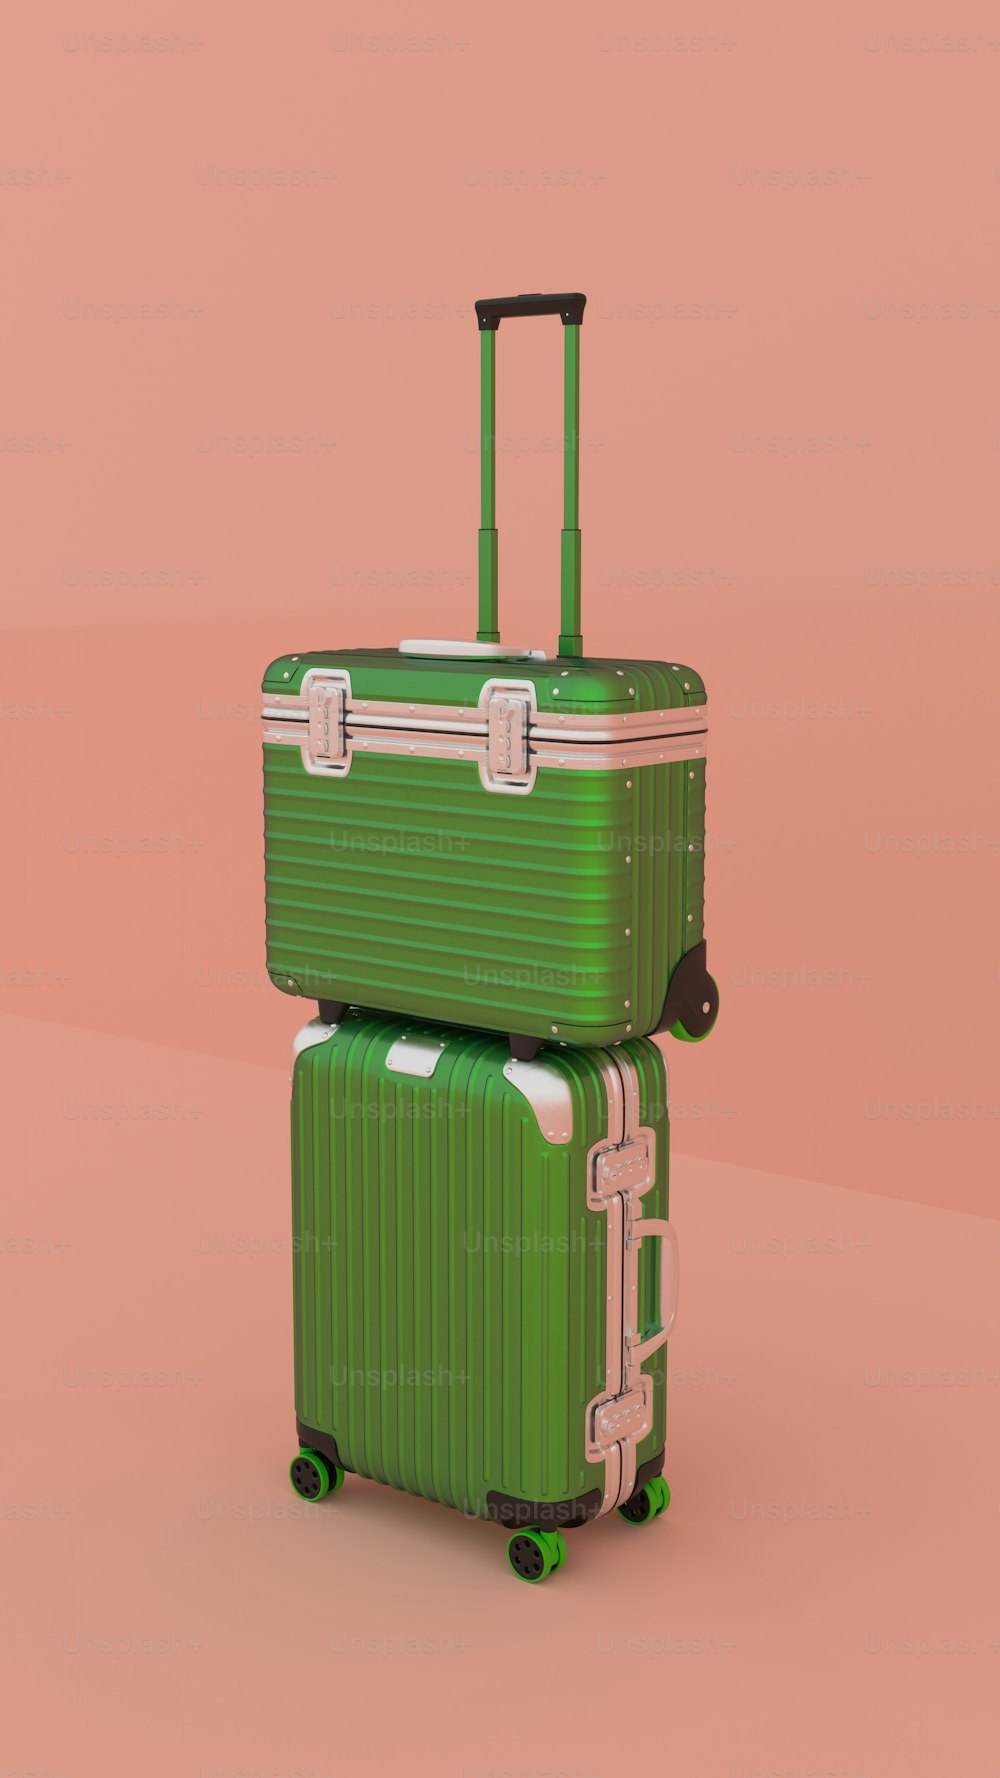 두 개의 녹색 여행 가방이 서로 겹쳐져 있습니다.